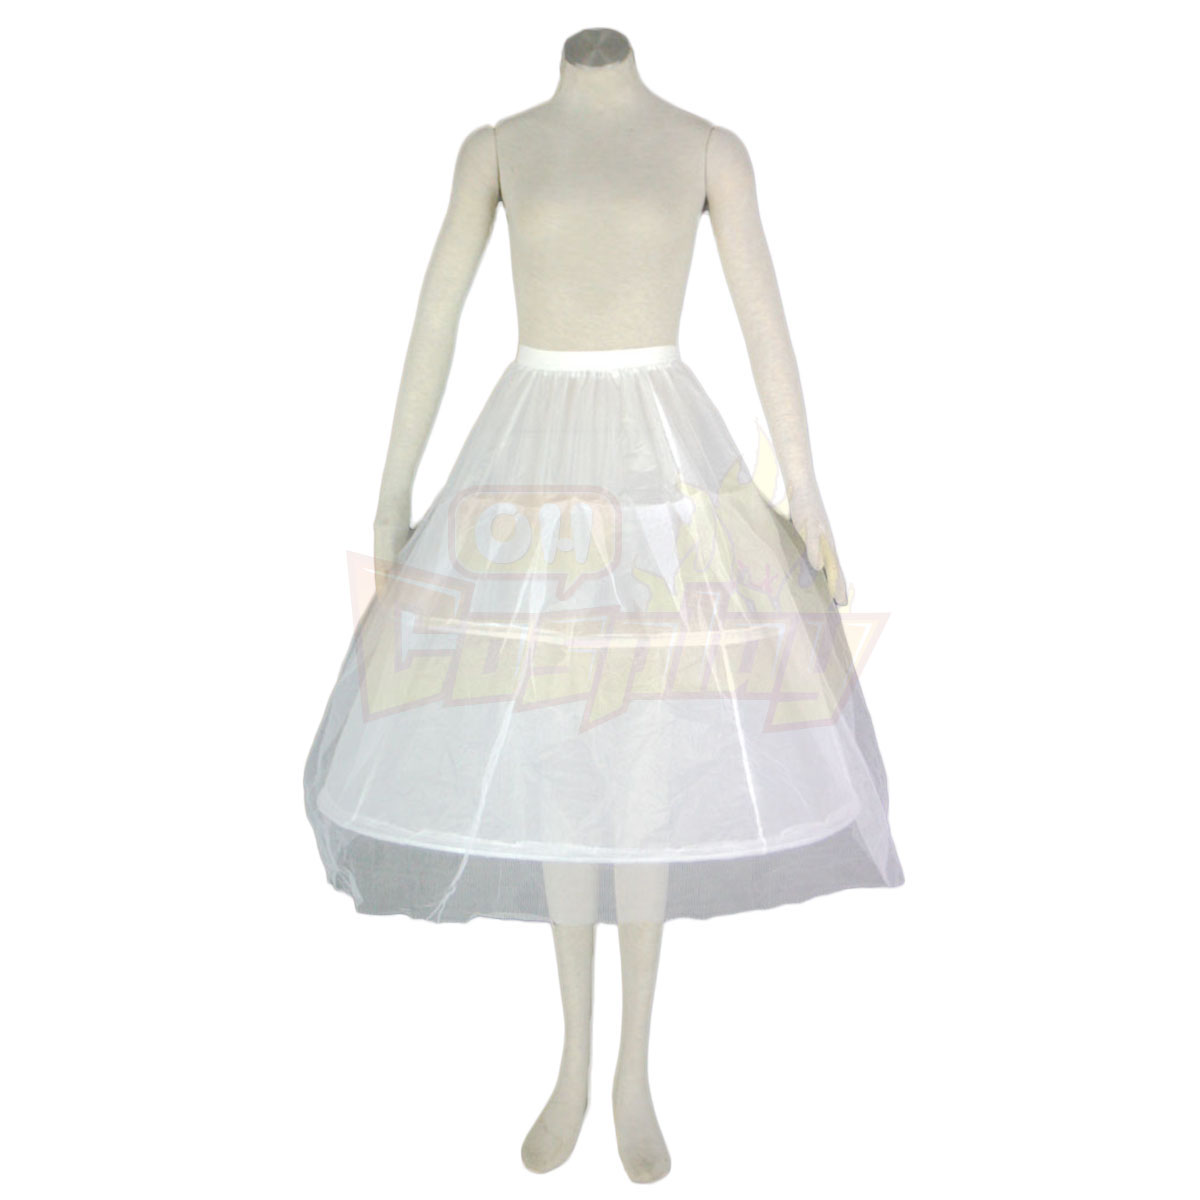 호화로운 로리타 문화 터커 체인 소동 긴 드레스 코스프레 의상